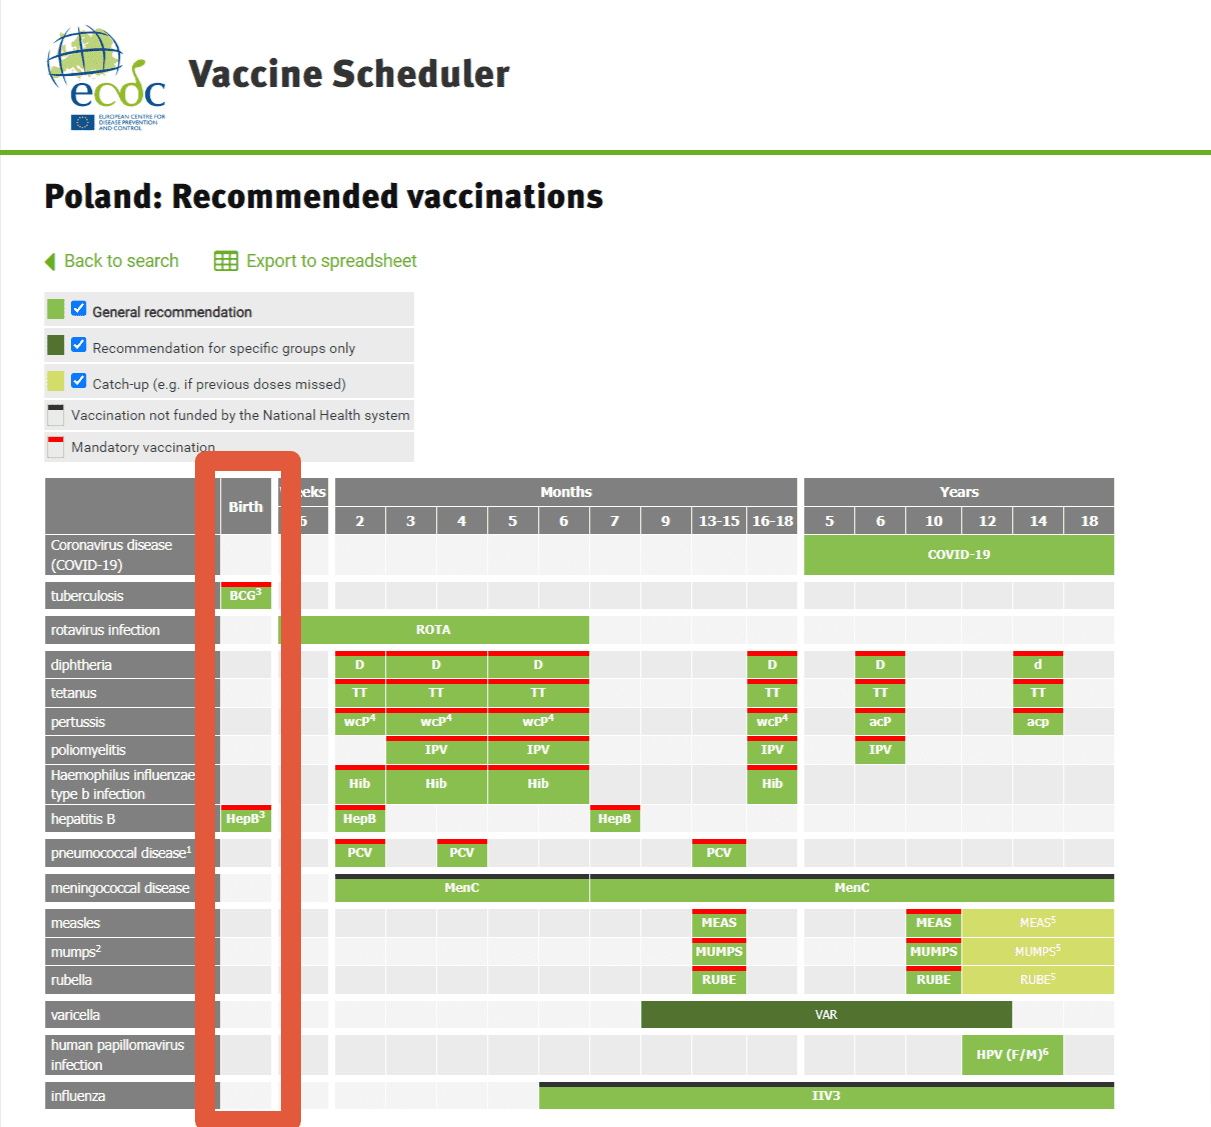 Zrzut ekranu z kalendarza szczepień udostępnianego na stronie ECDC. Pomarańczową ramką zaznaczono szczepienia podawane w pierwszej dobie życia.